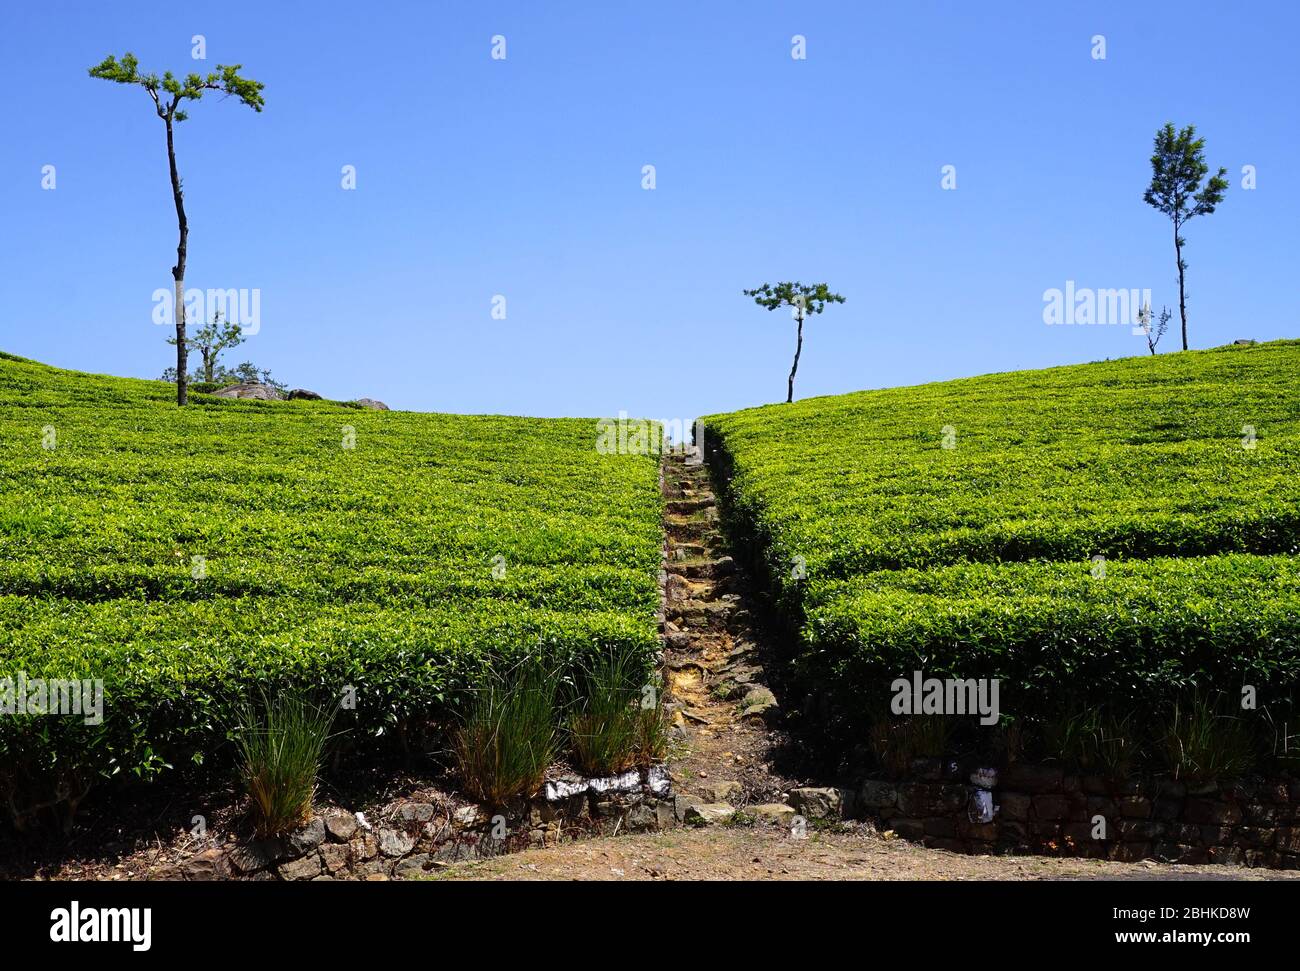 Piante di tè bisecate da un percorso in una piantagione di tè vicino alla sede di Lipton nella regione collinare dello Sri Lanka Foto Stock